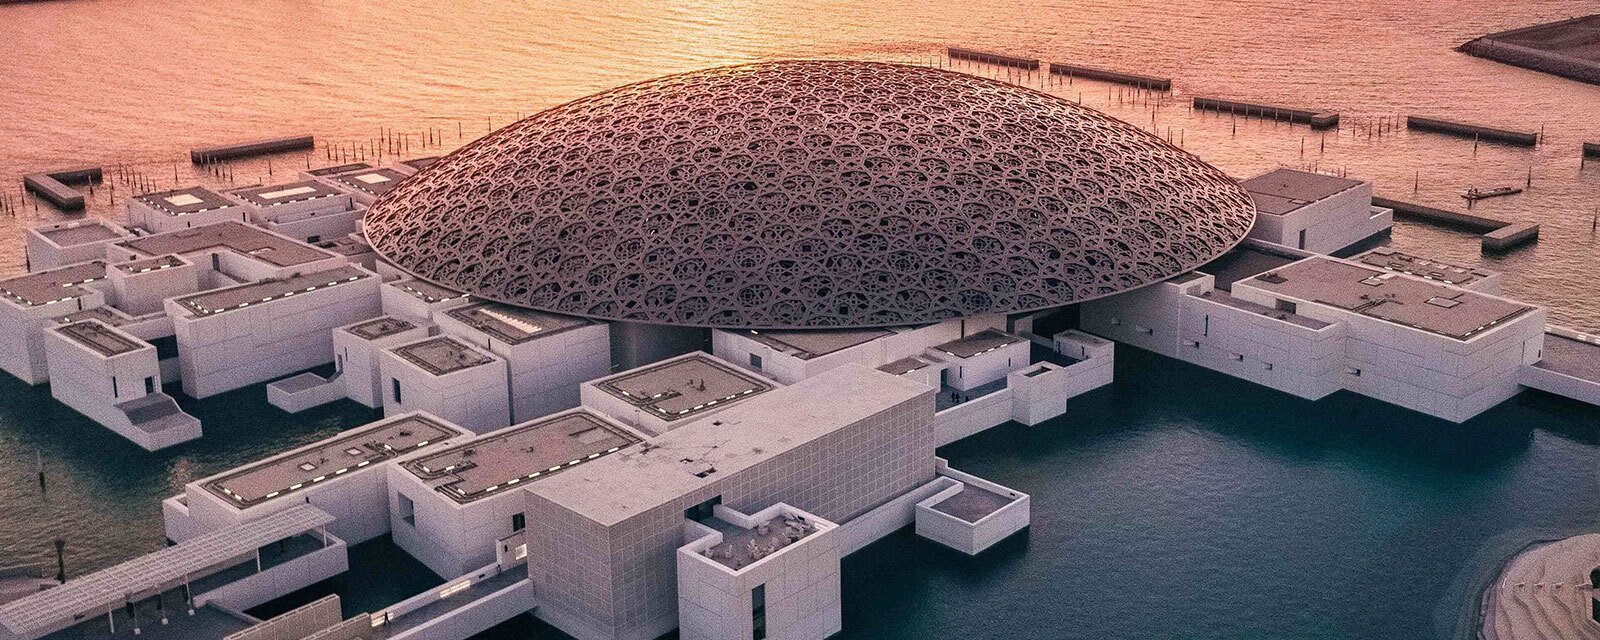 7. מוזיאון הלובר אבו דאבי (Louvre Abu Dhabi)